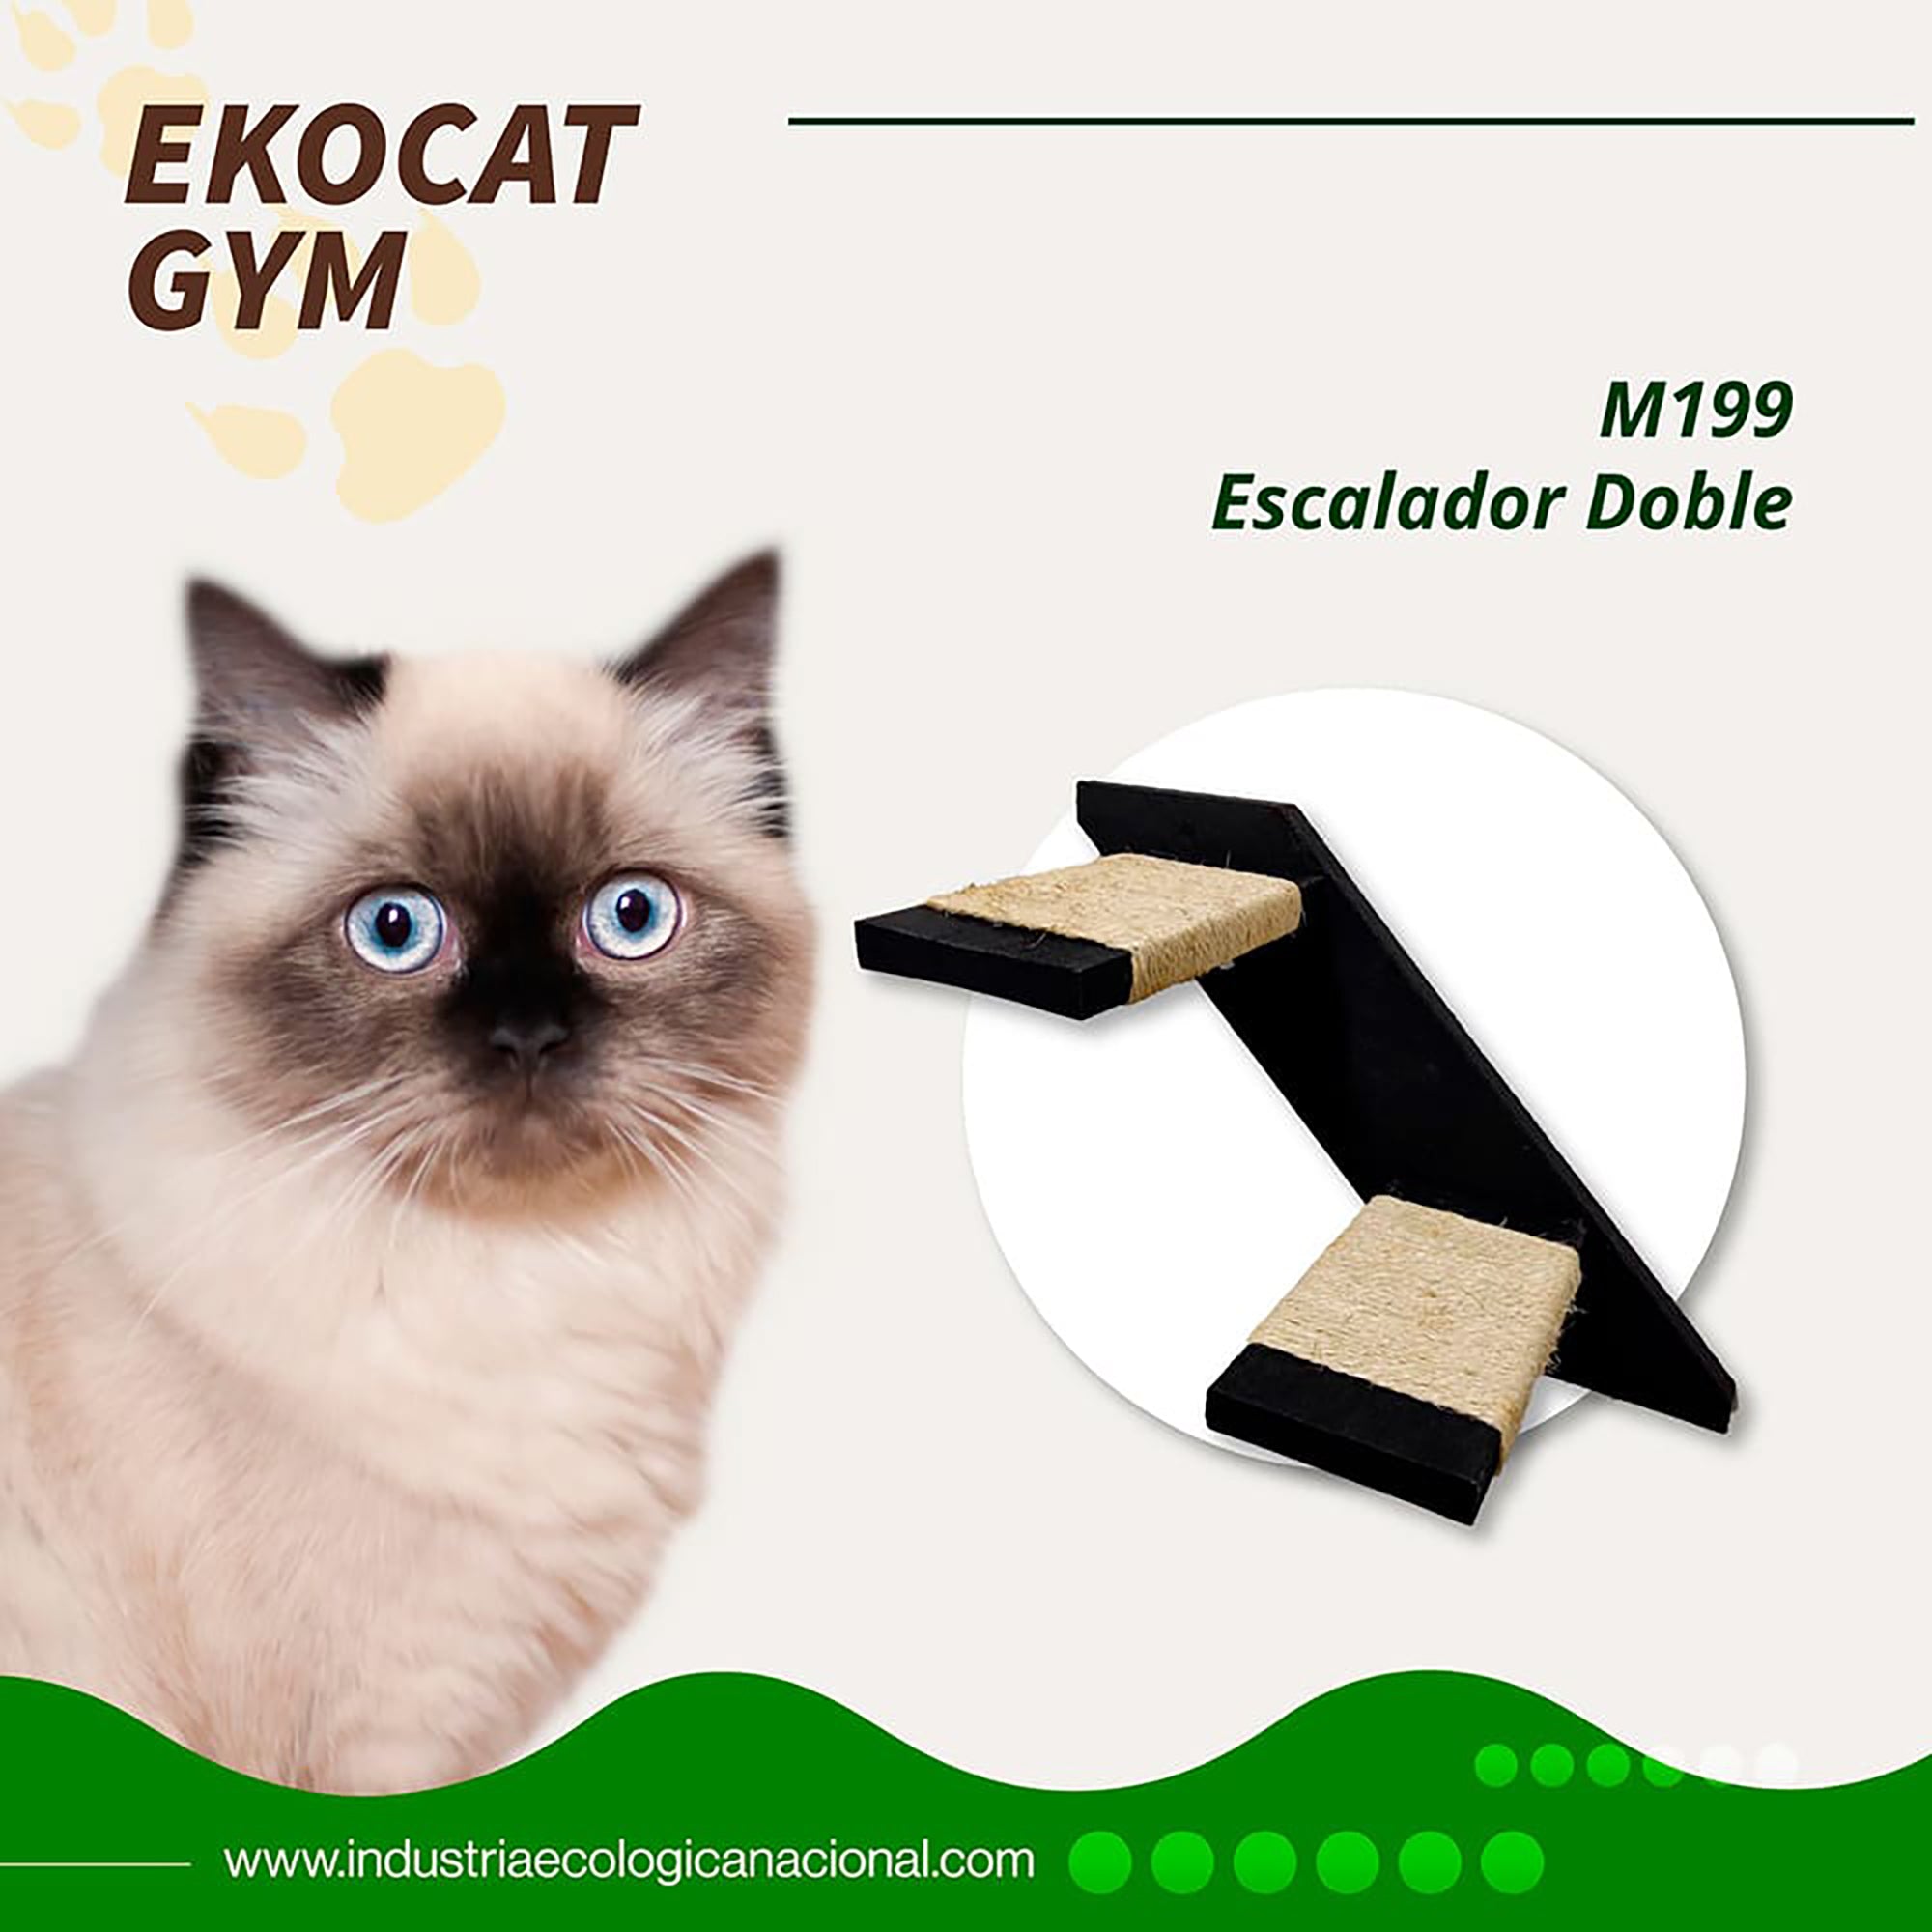 EKOCAT: Escalador doble para gatos